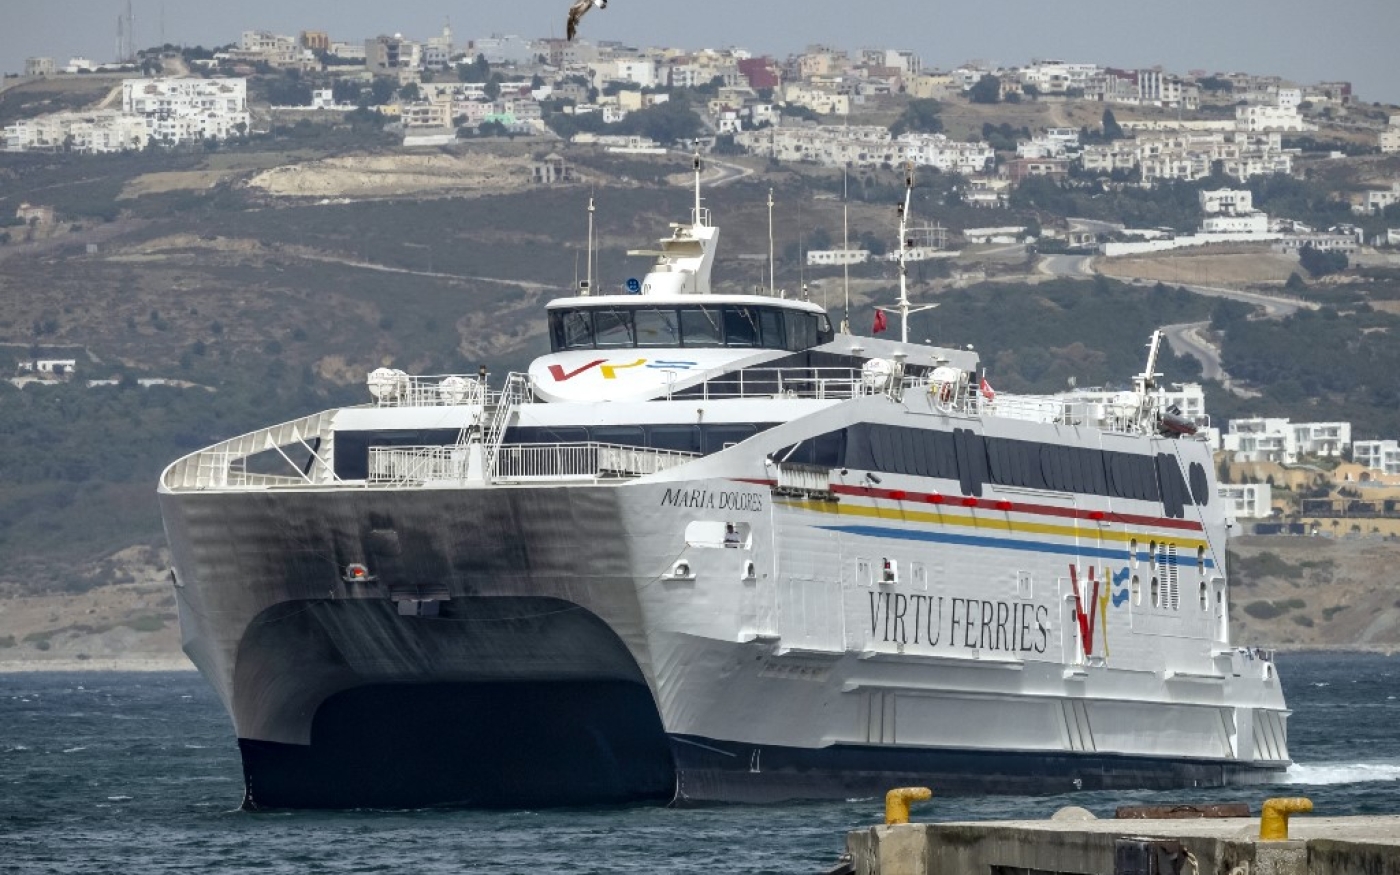 Un ferry arrive au port de Tanger, le 15 juin 2022. Des milliers de ressortissants marocains vivant et travaillant en Europe pour des vacances traversent le détroit de Gibraltar pour passer des vacances d’été au Maroc (AFP/Fadel Senna)